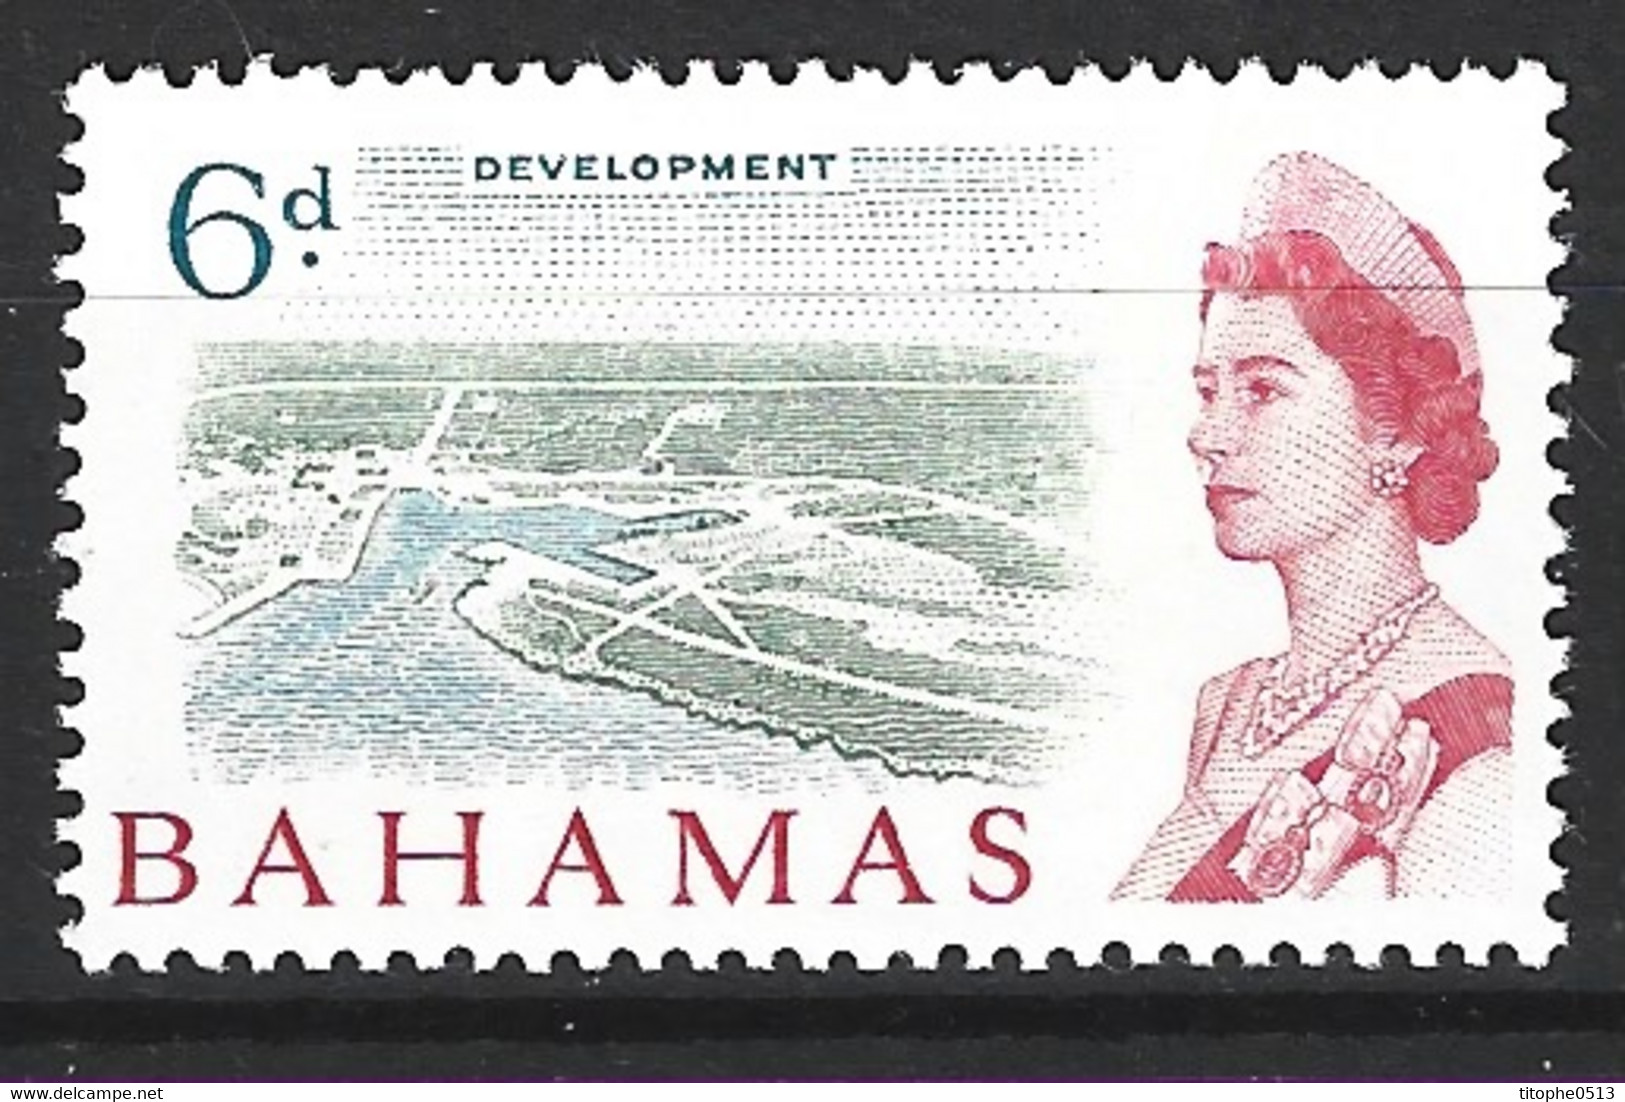 BAHAMAS. N°199 De 1965. Développement Des îles. - 1963-1973 Interne Autonomie